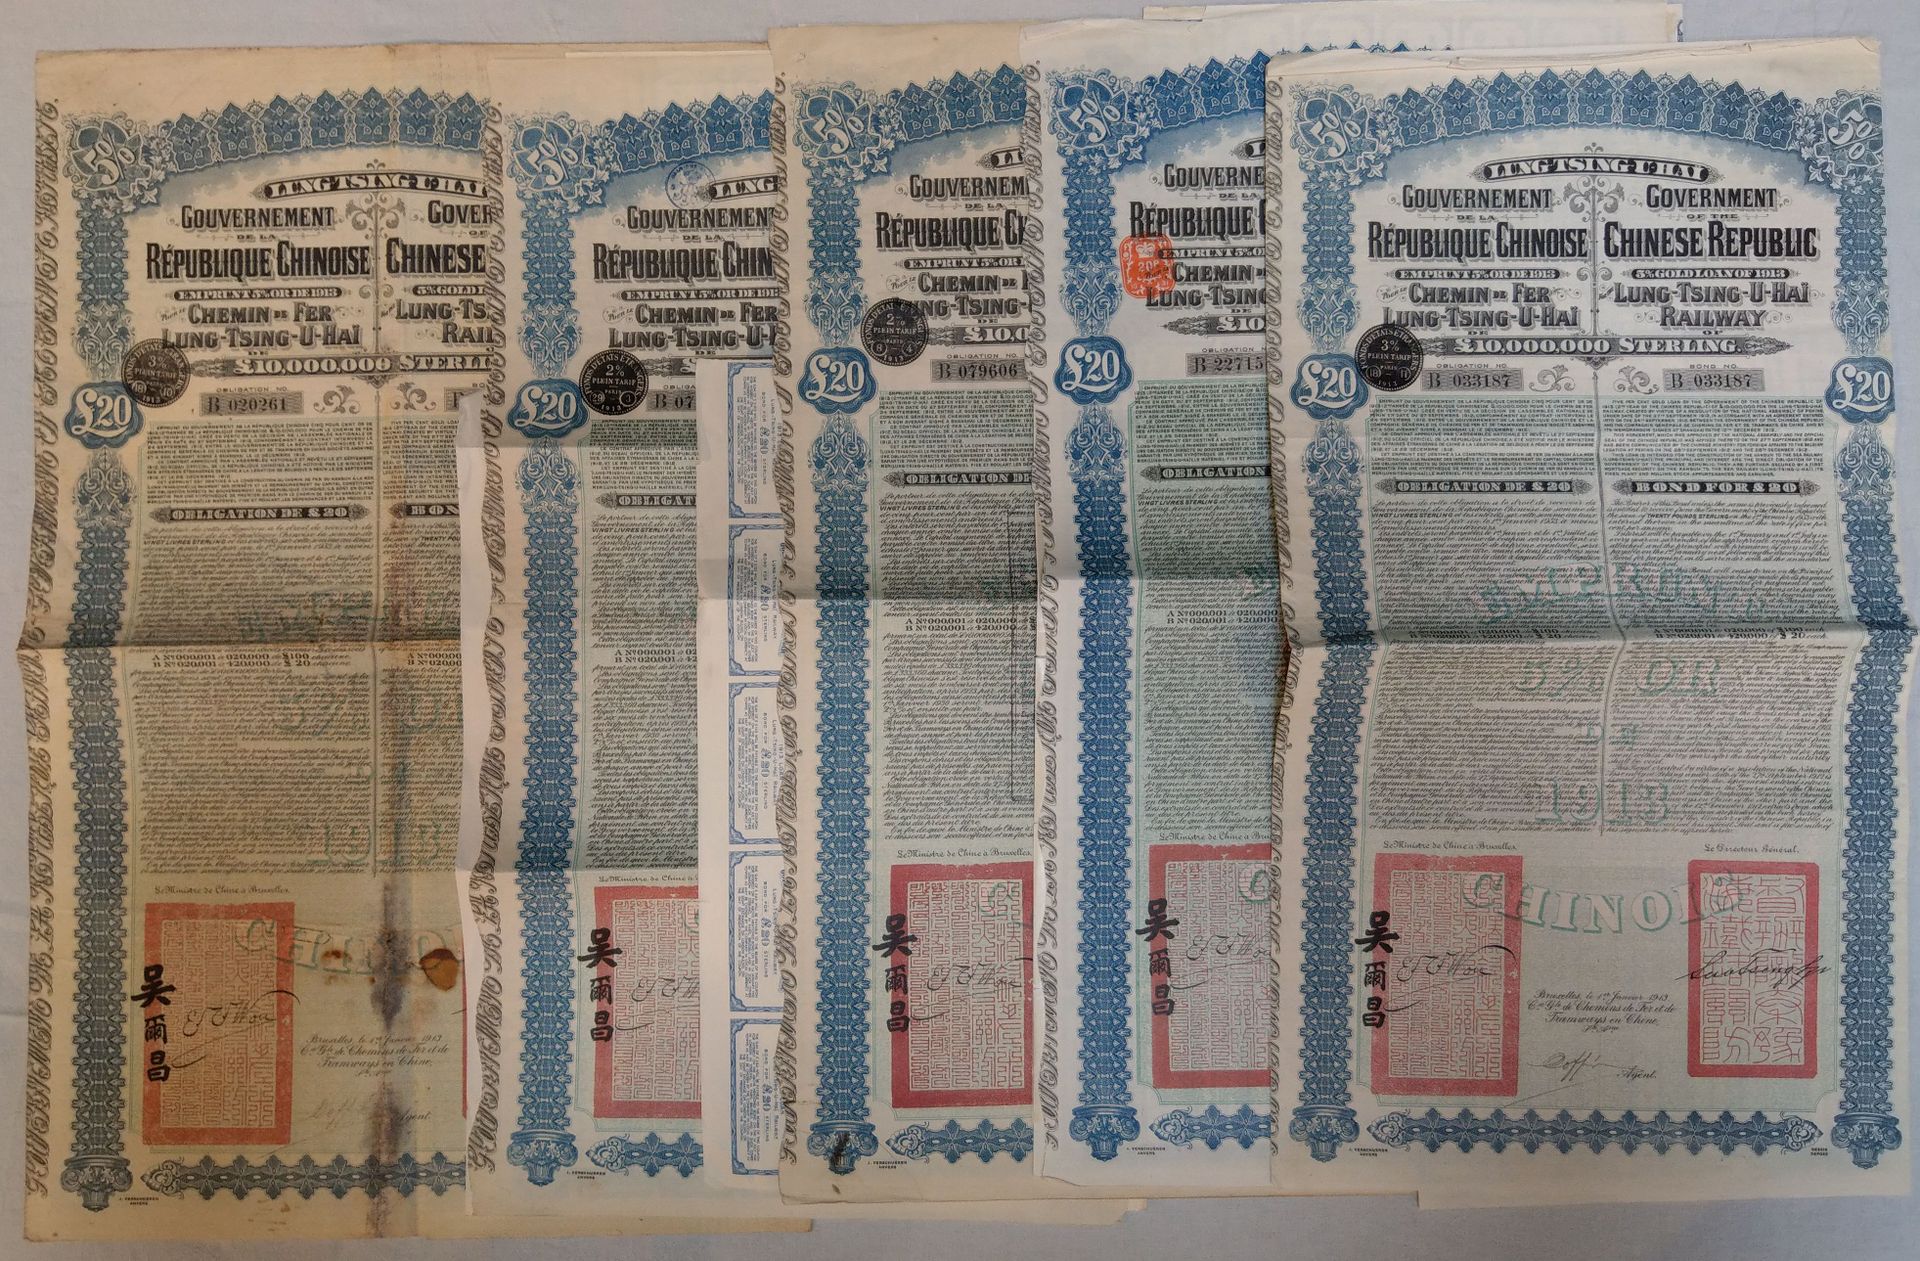 Lot de cinq obligations £20 (Lung-Tsing-U-Hai) LTUH 1913 CHINE, 1913

Lot de cin&hellip;